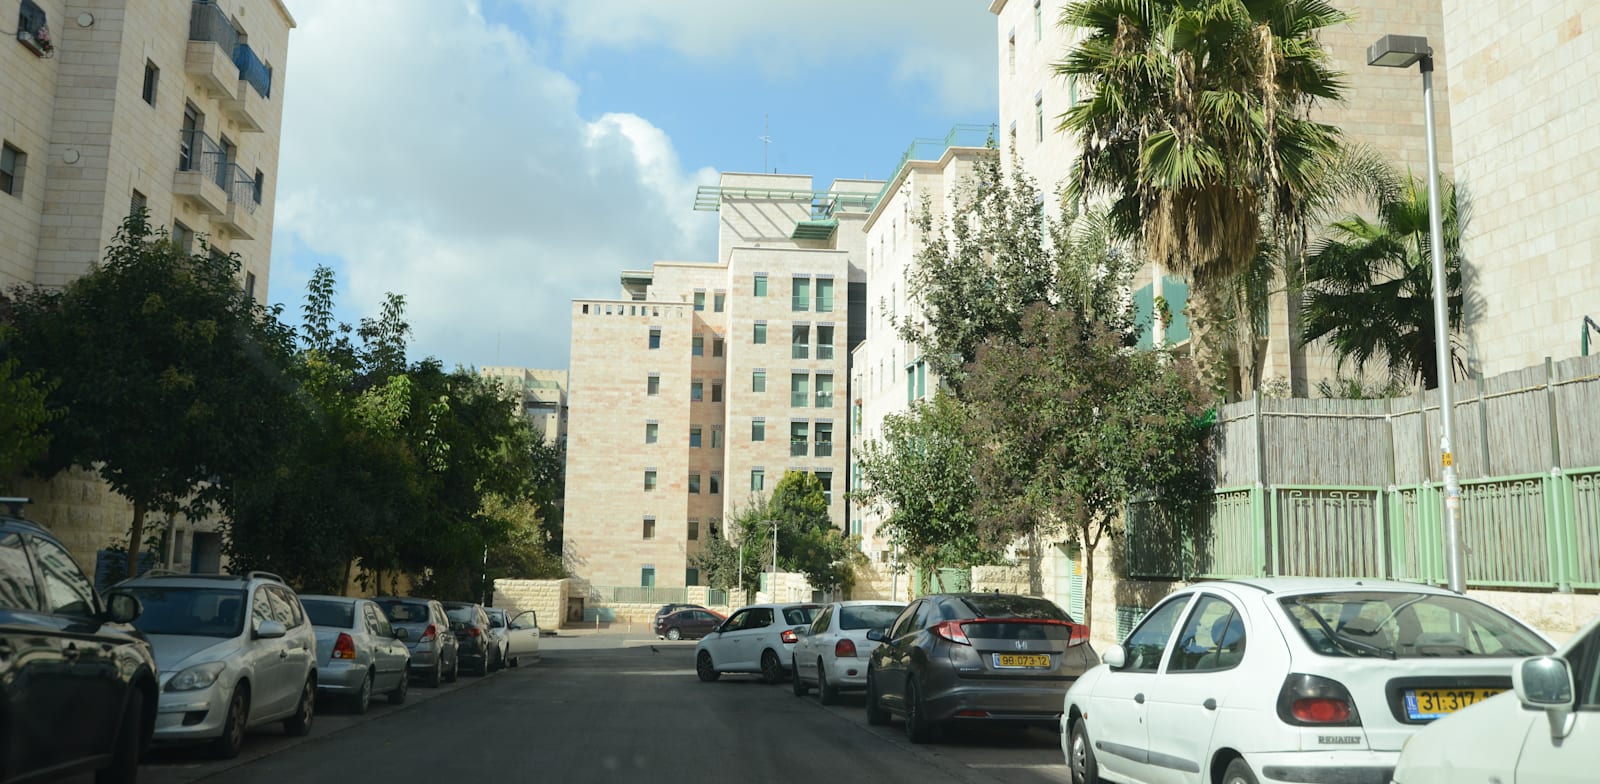 בנייני מגורים בירושלים. הארנונה צפויה להתייקר / צילום: איל יצהר